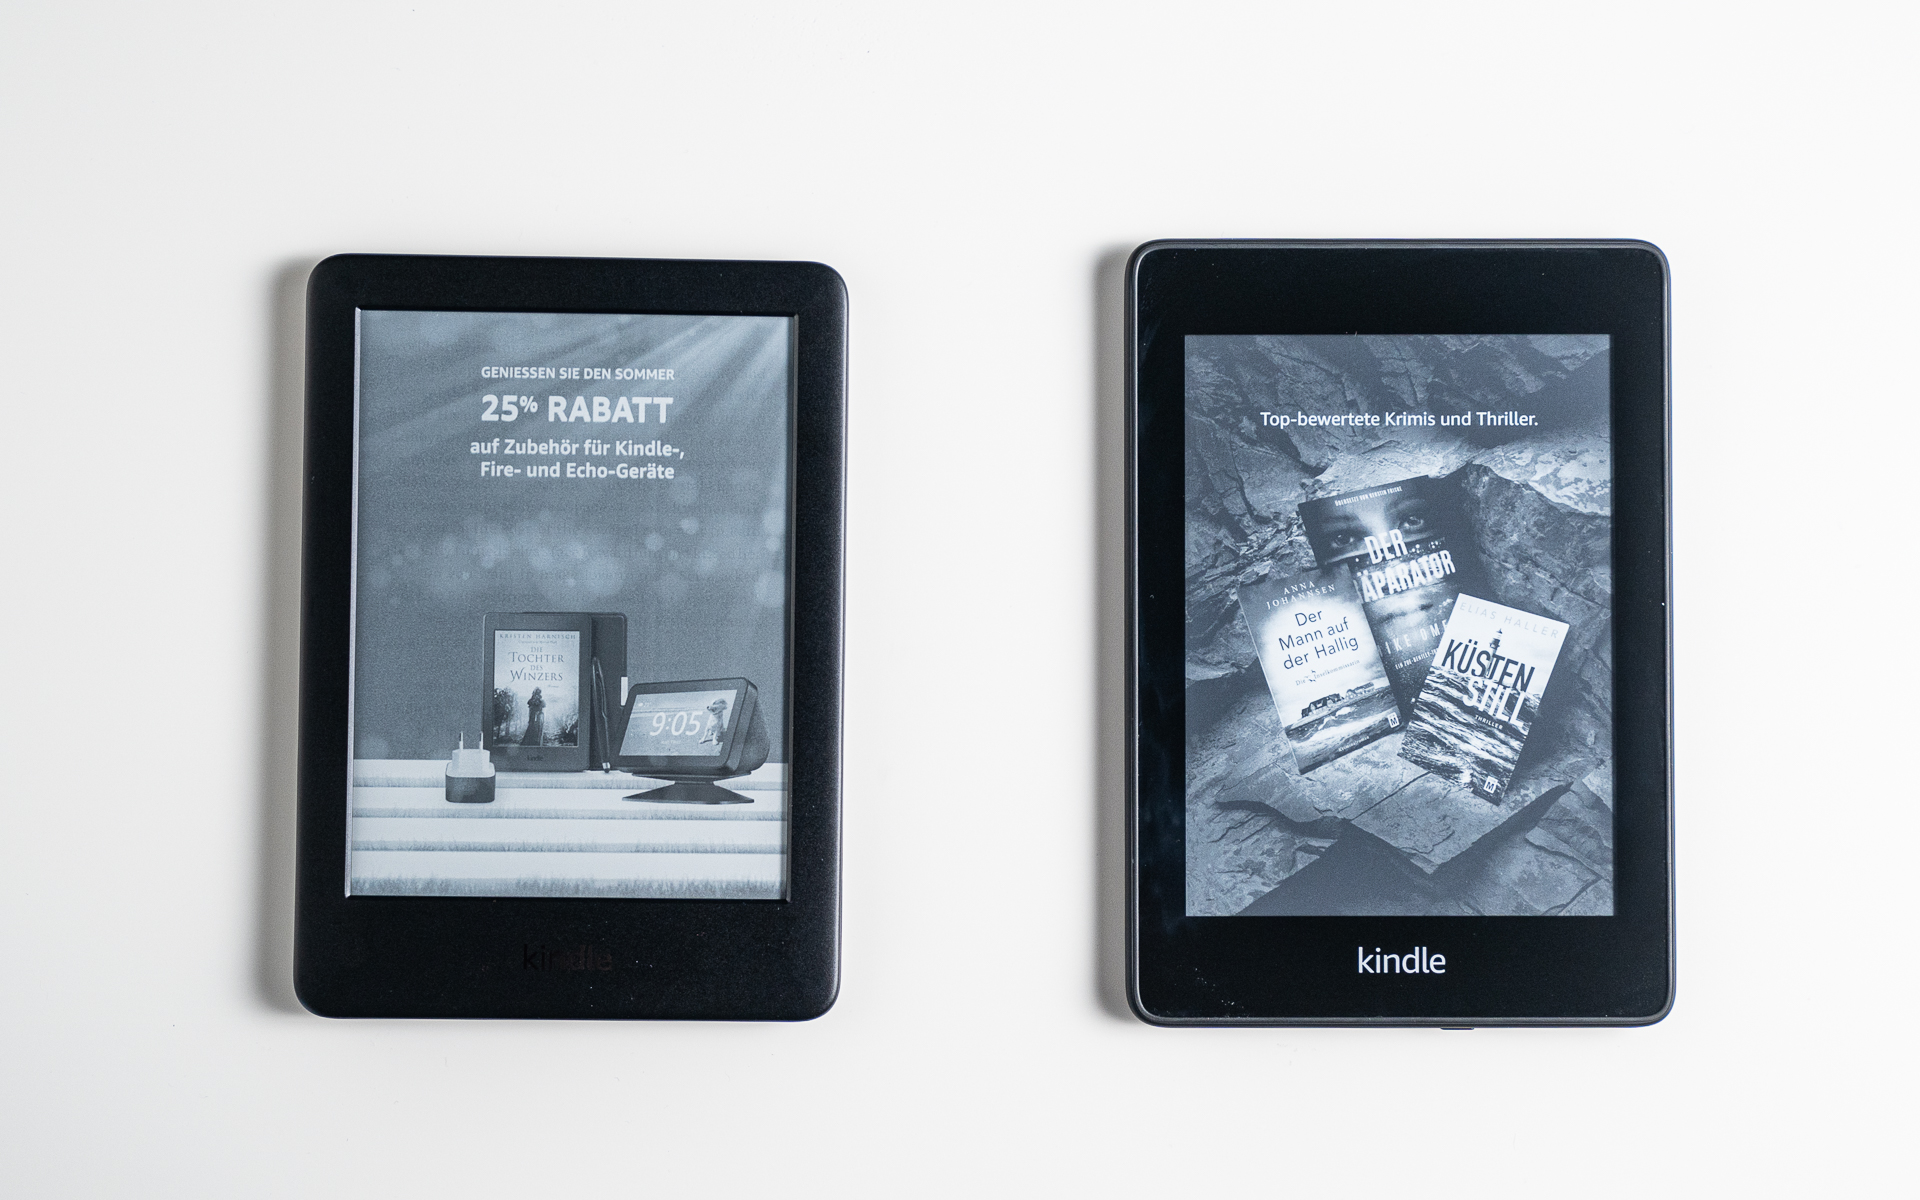 Amazon Kindle vs Paperwhite comparison